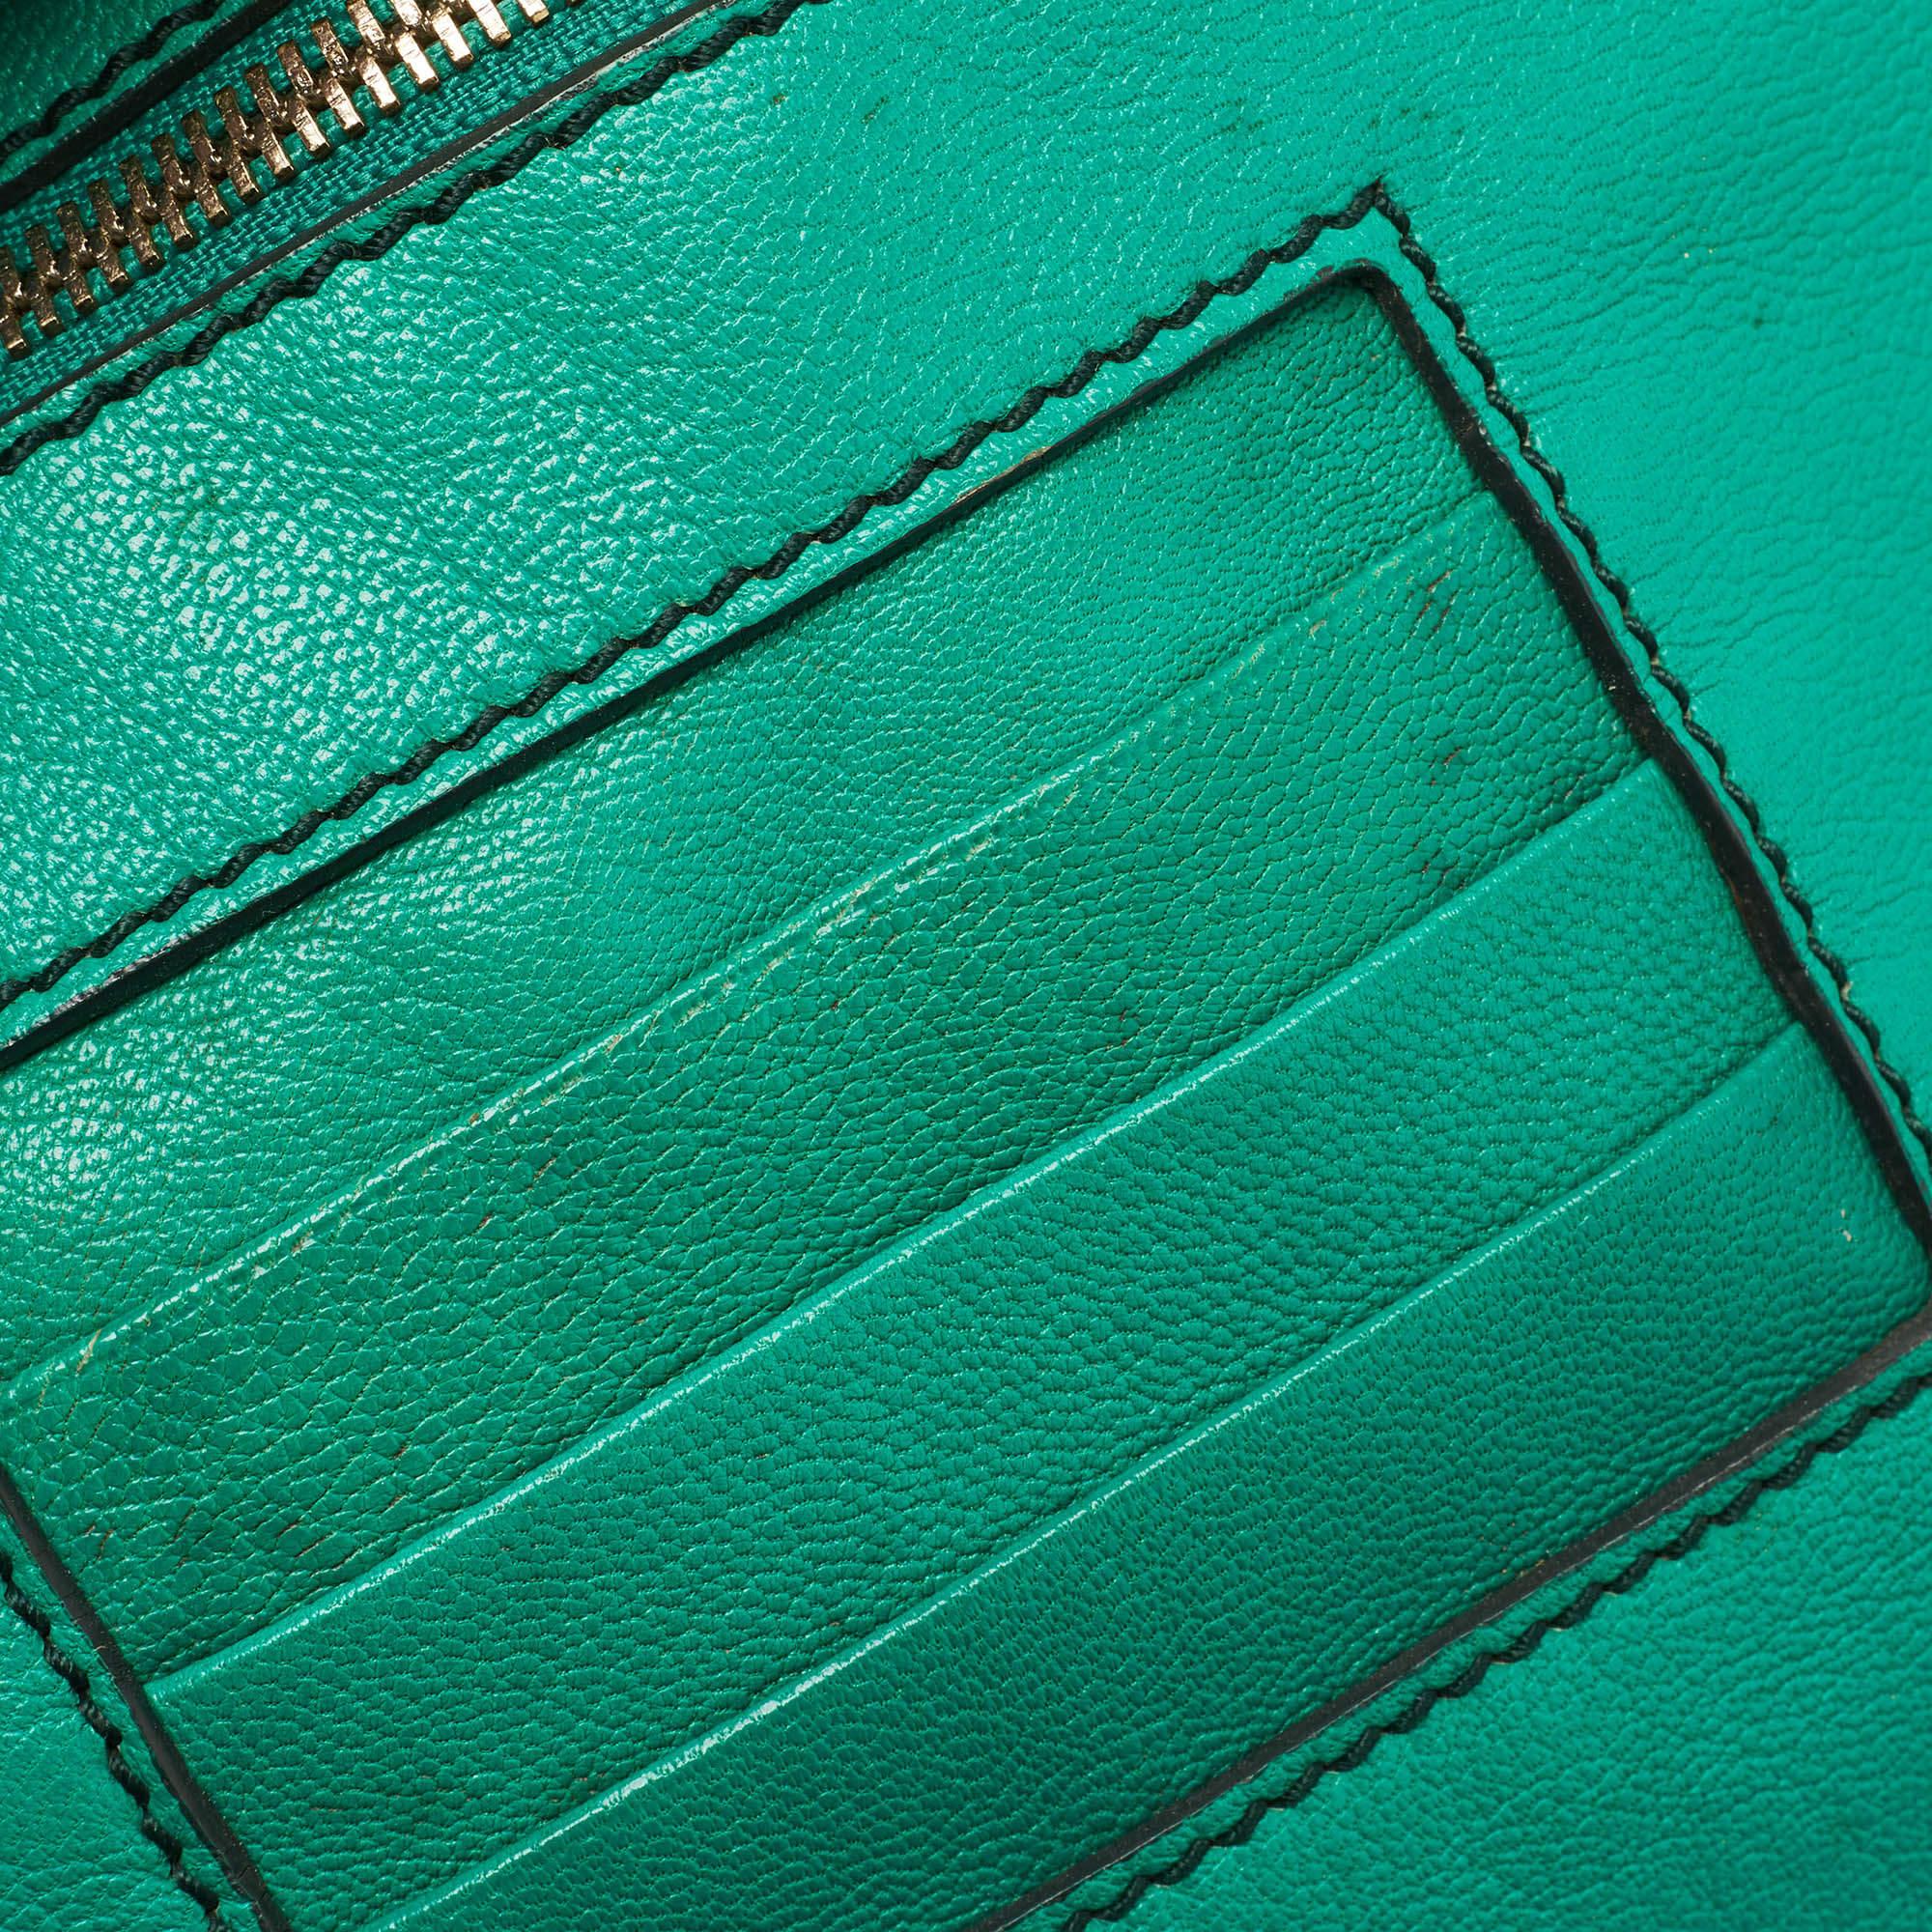 D&G Green Leather Ania Tote In Good Condition For Sale In Dubai, Al Qouz 2